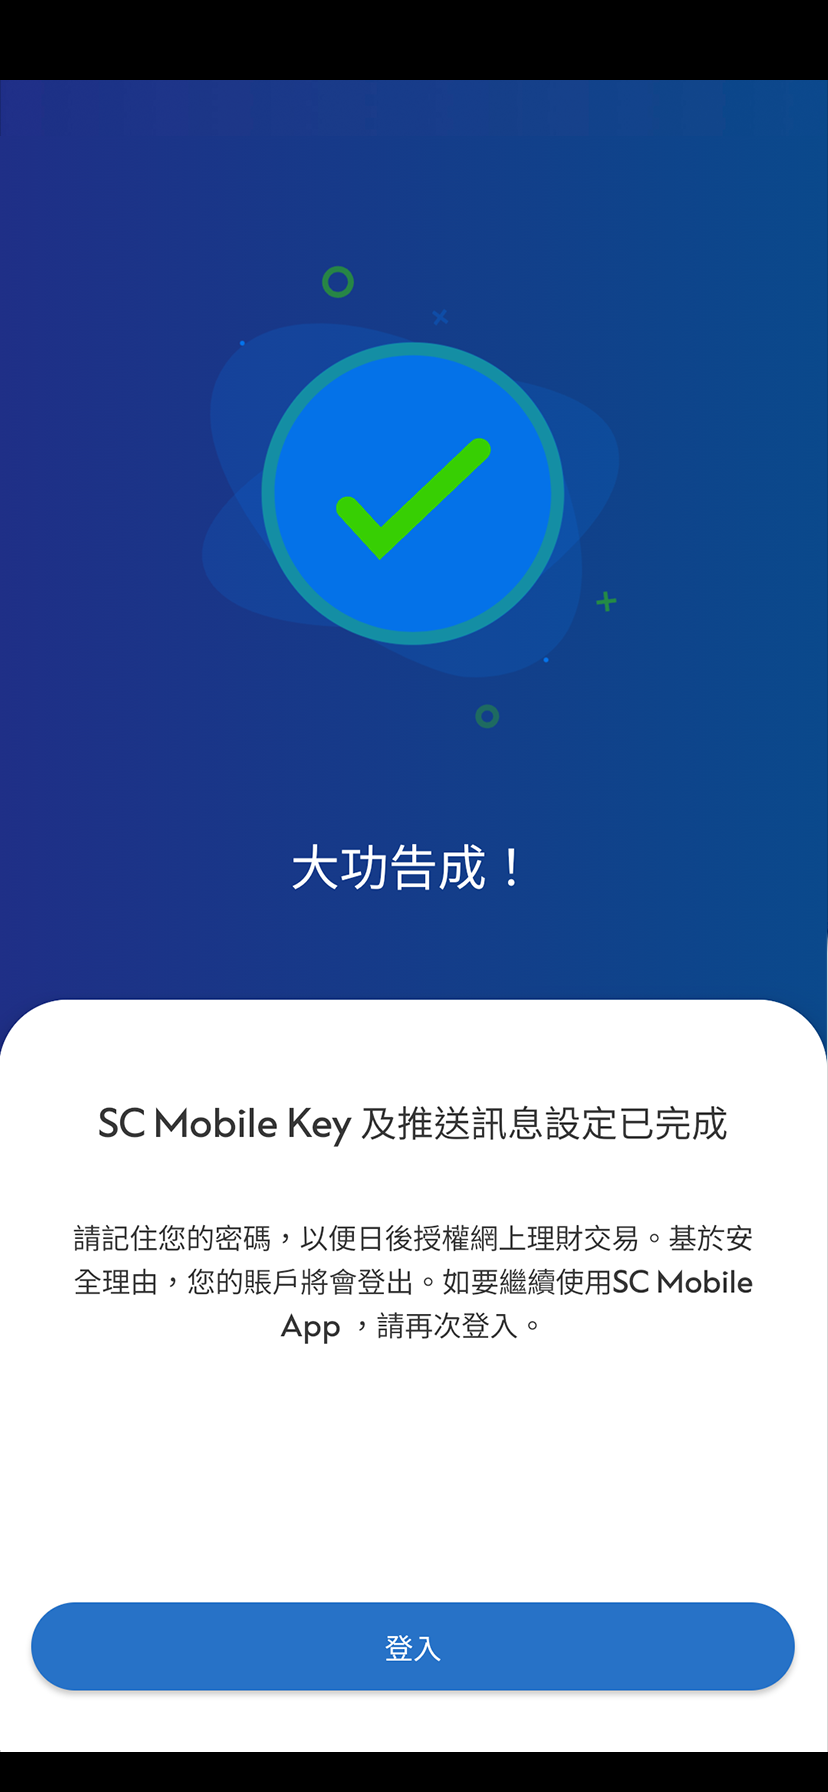 Register your SC Mobile Key Step 6